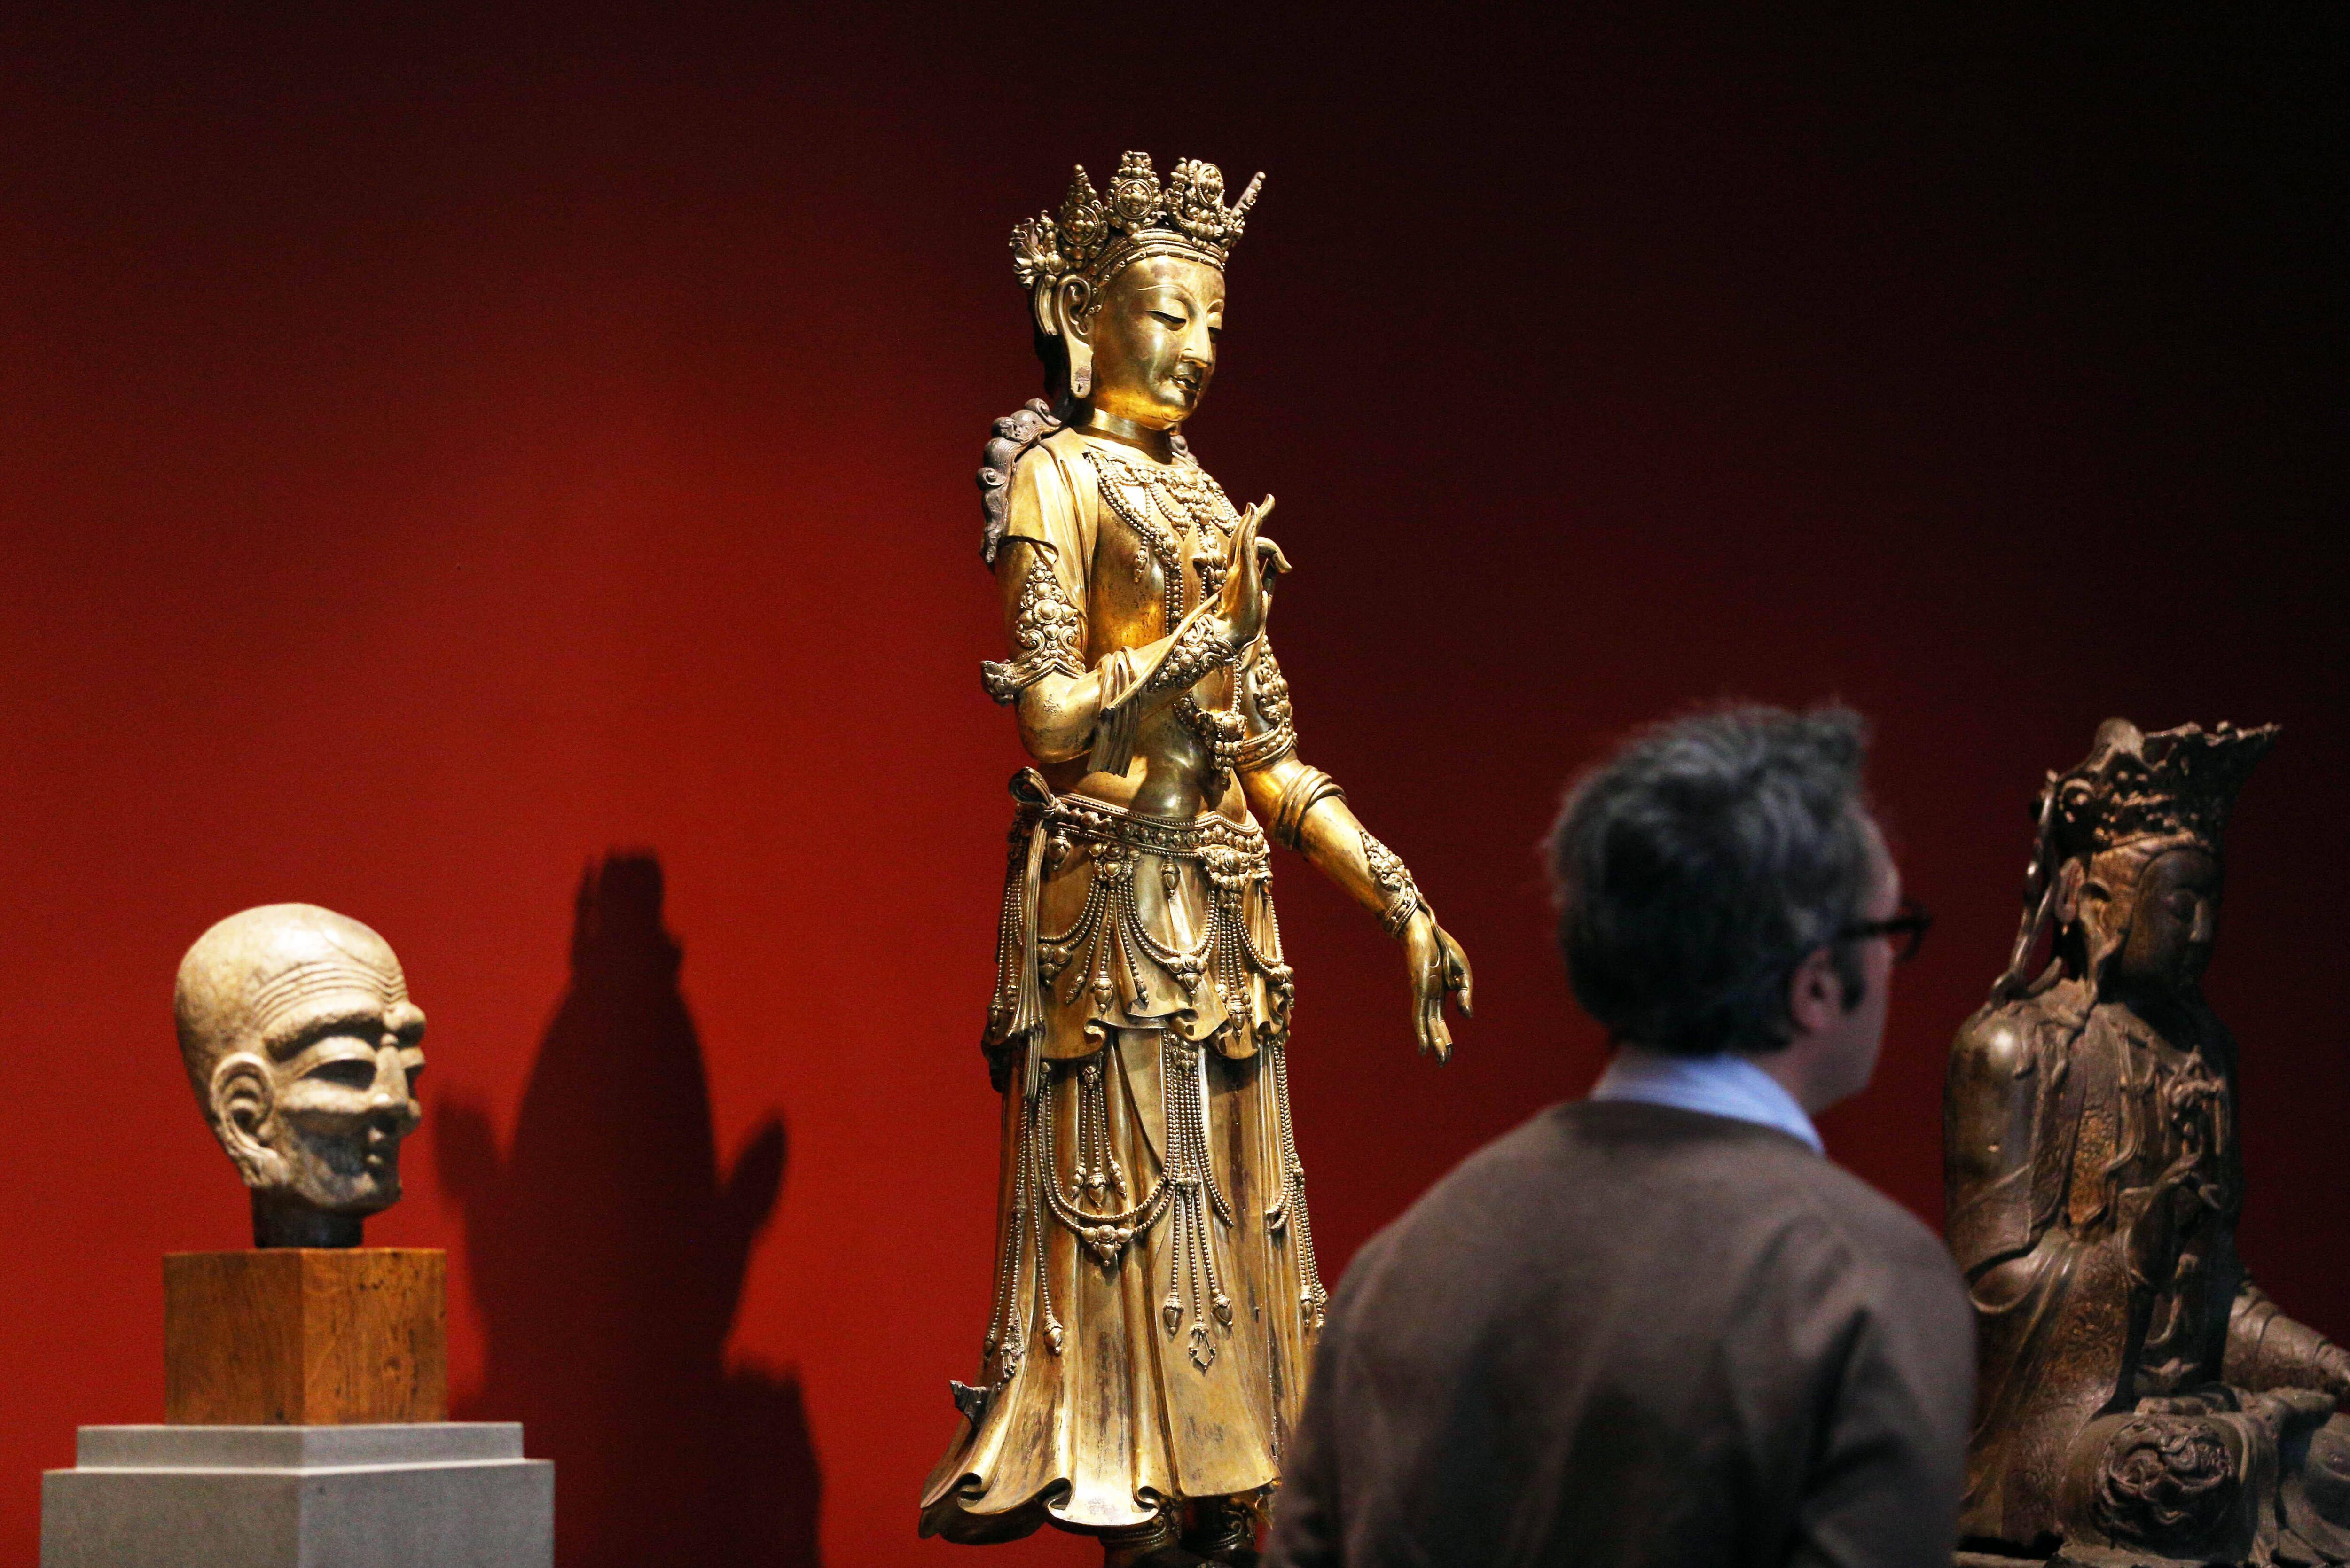 Una de las esculturas expuesta en el museo Cernuschi, durante su reinauguración en marzo de 2020.